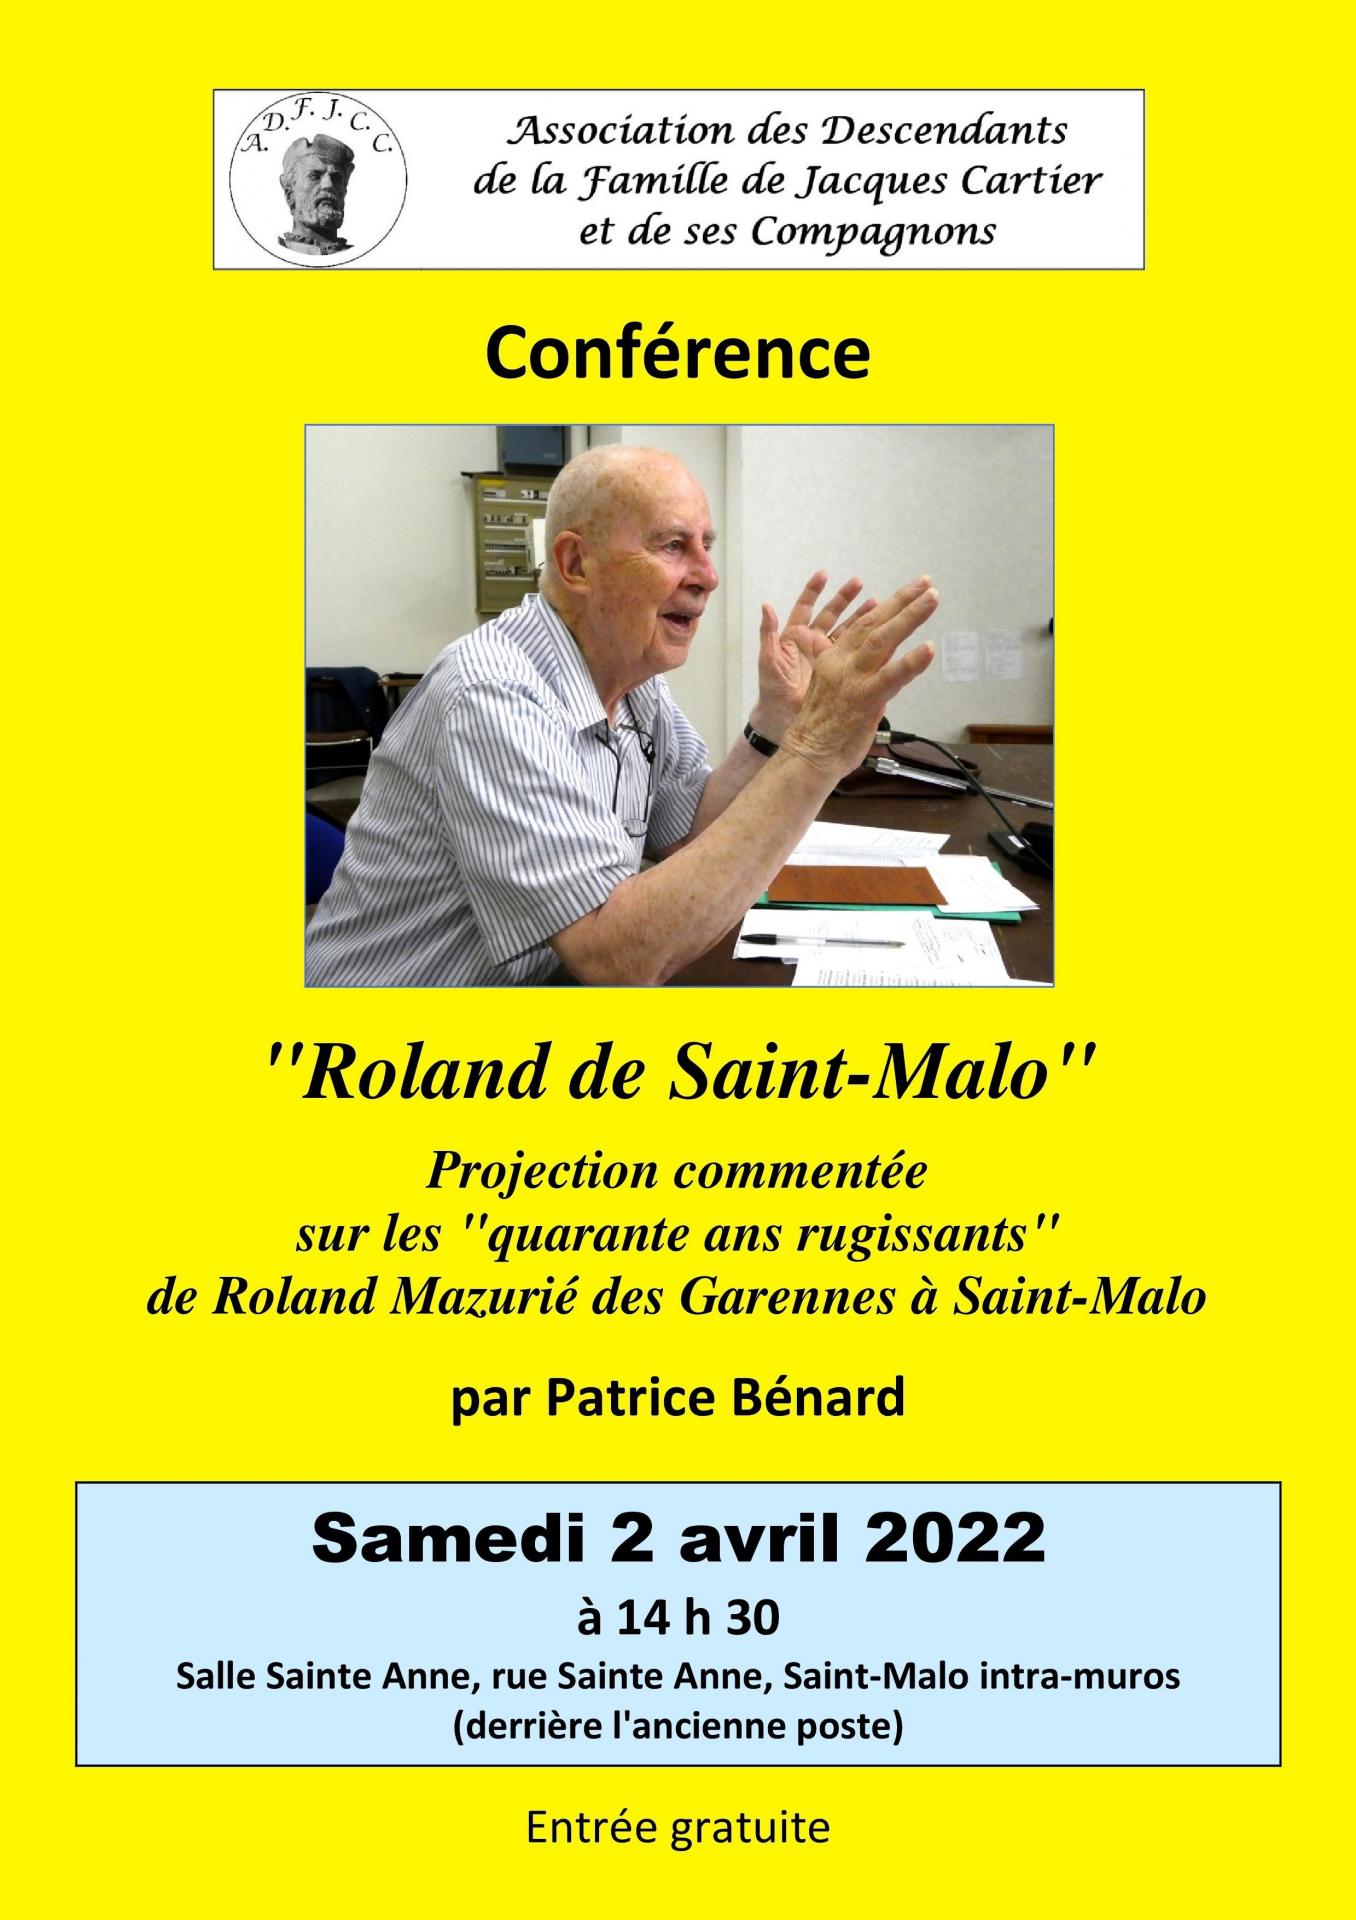 Adfjcc 2022 04 02 affiche conference patrice benard roland de saint malo numerique